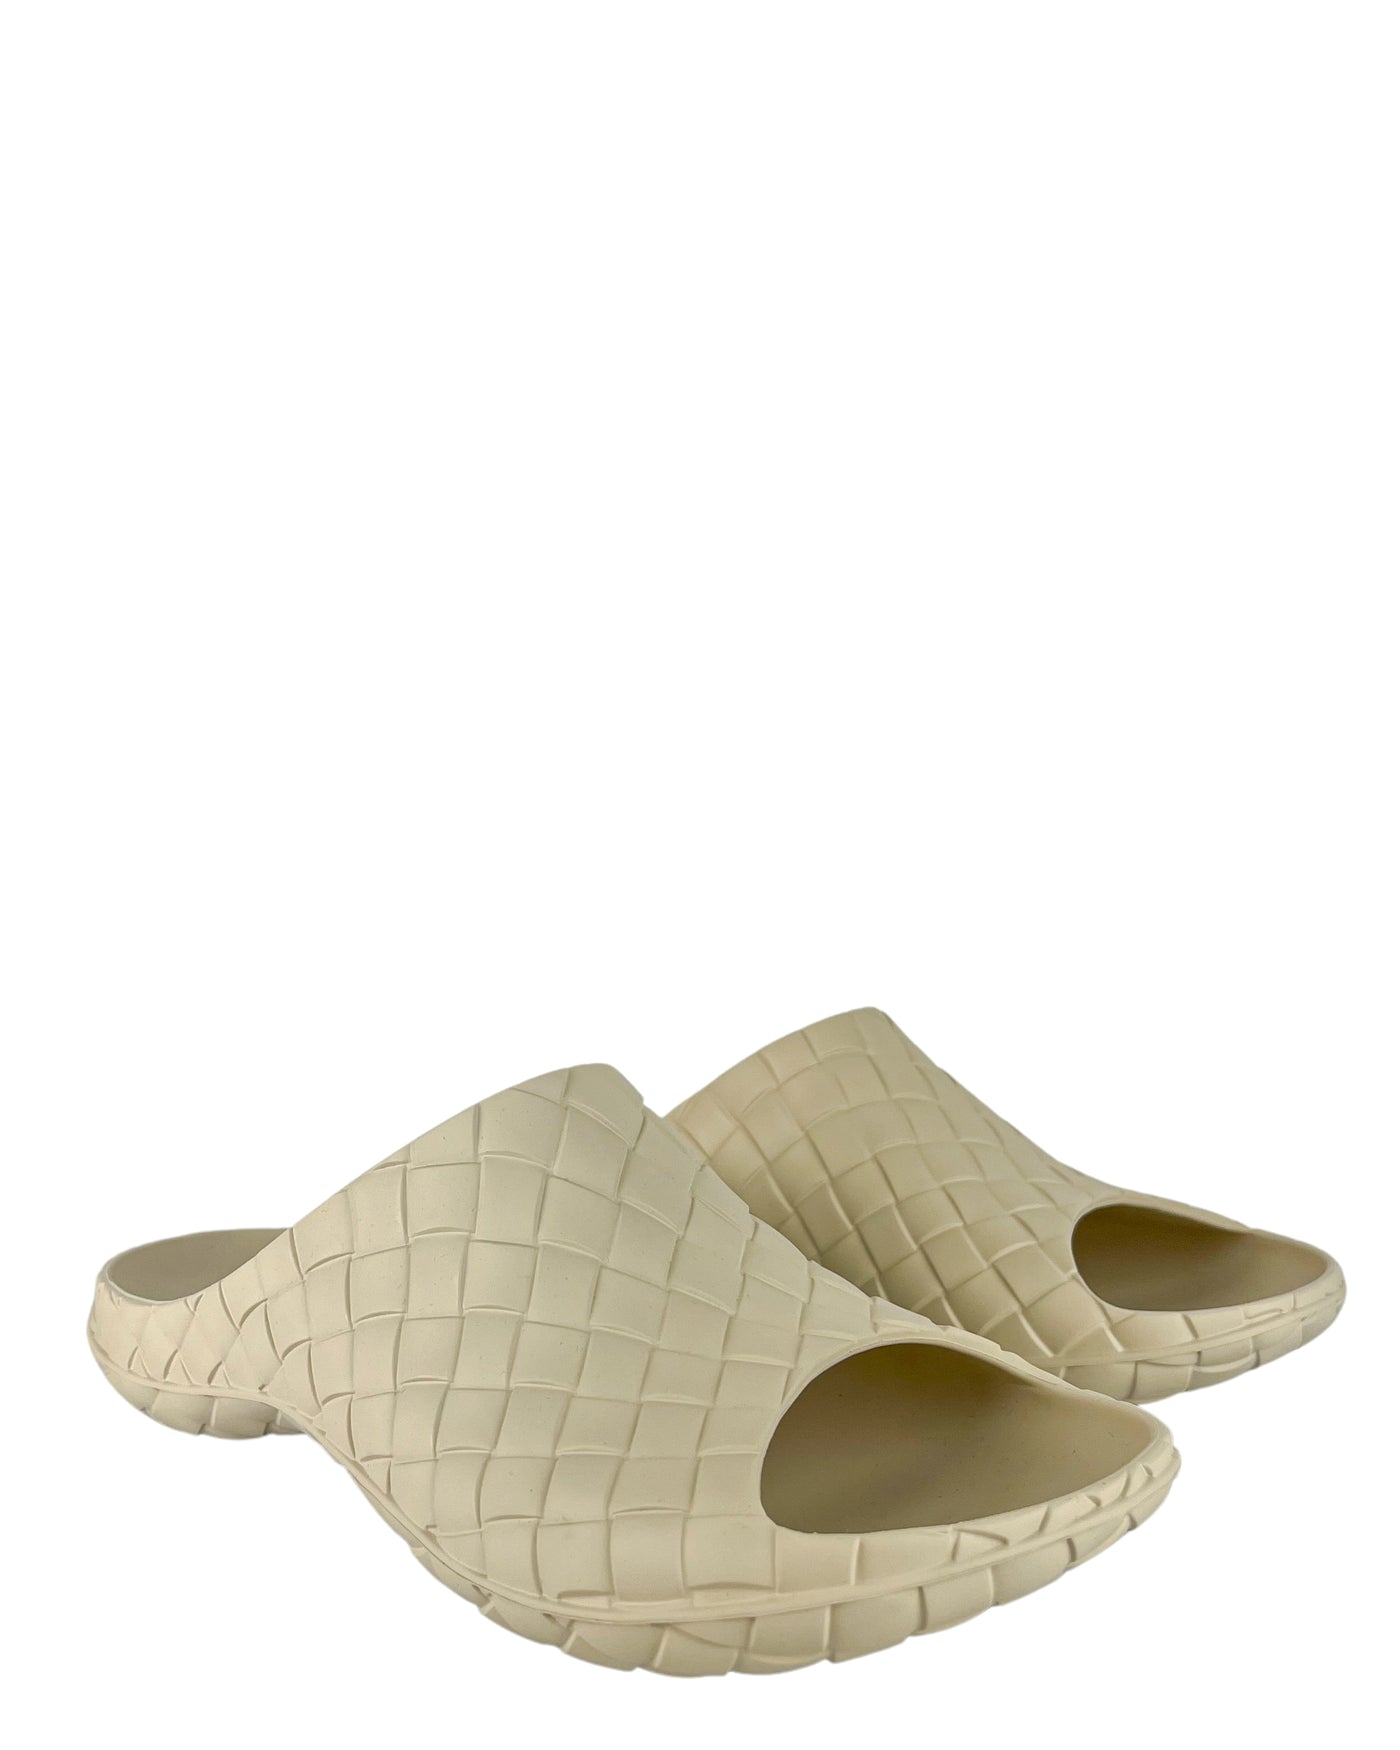 Bottega Veneta Rubber Sandals in Sea Salt - Discounts on Bottega Veneta at UAL